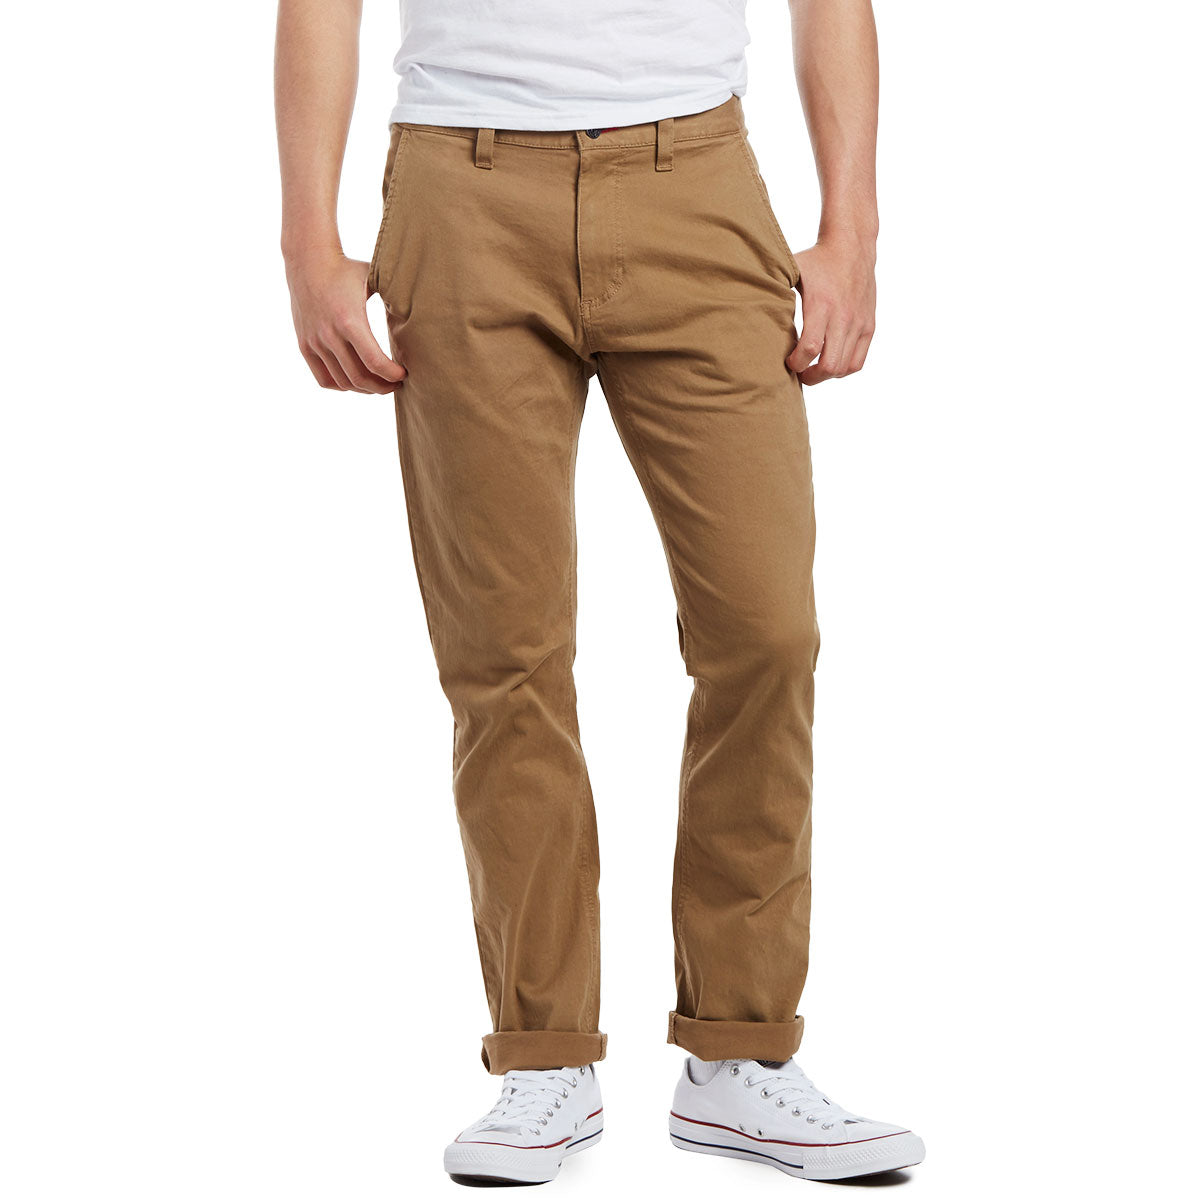 CCS Straight Fit Chino Pants - Khaki image 1